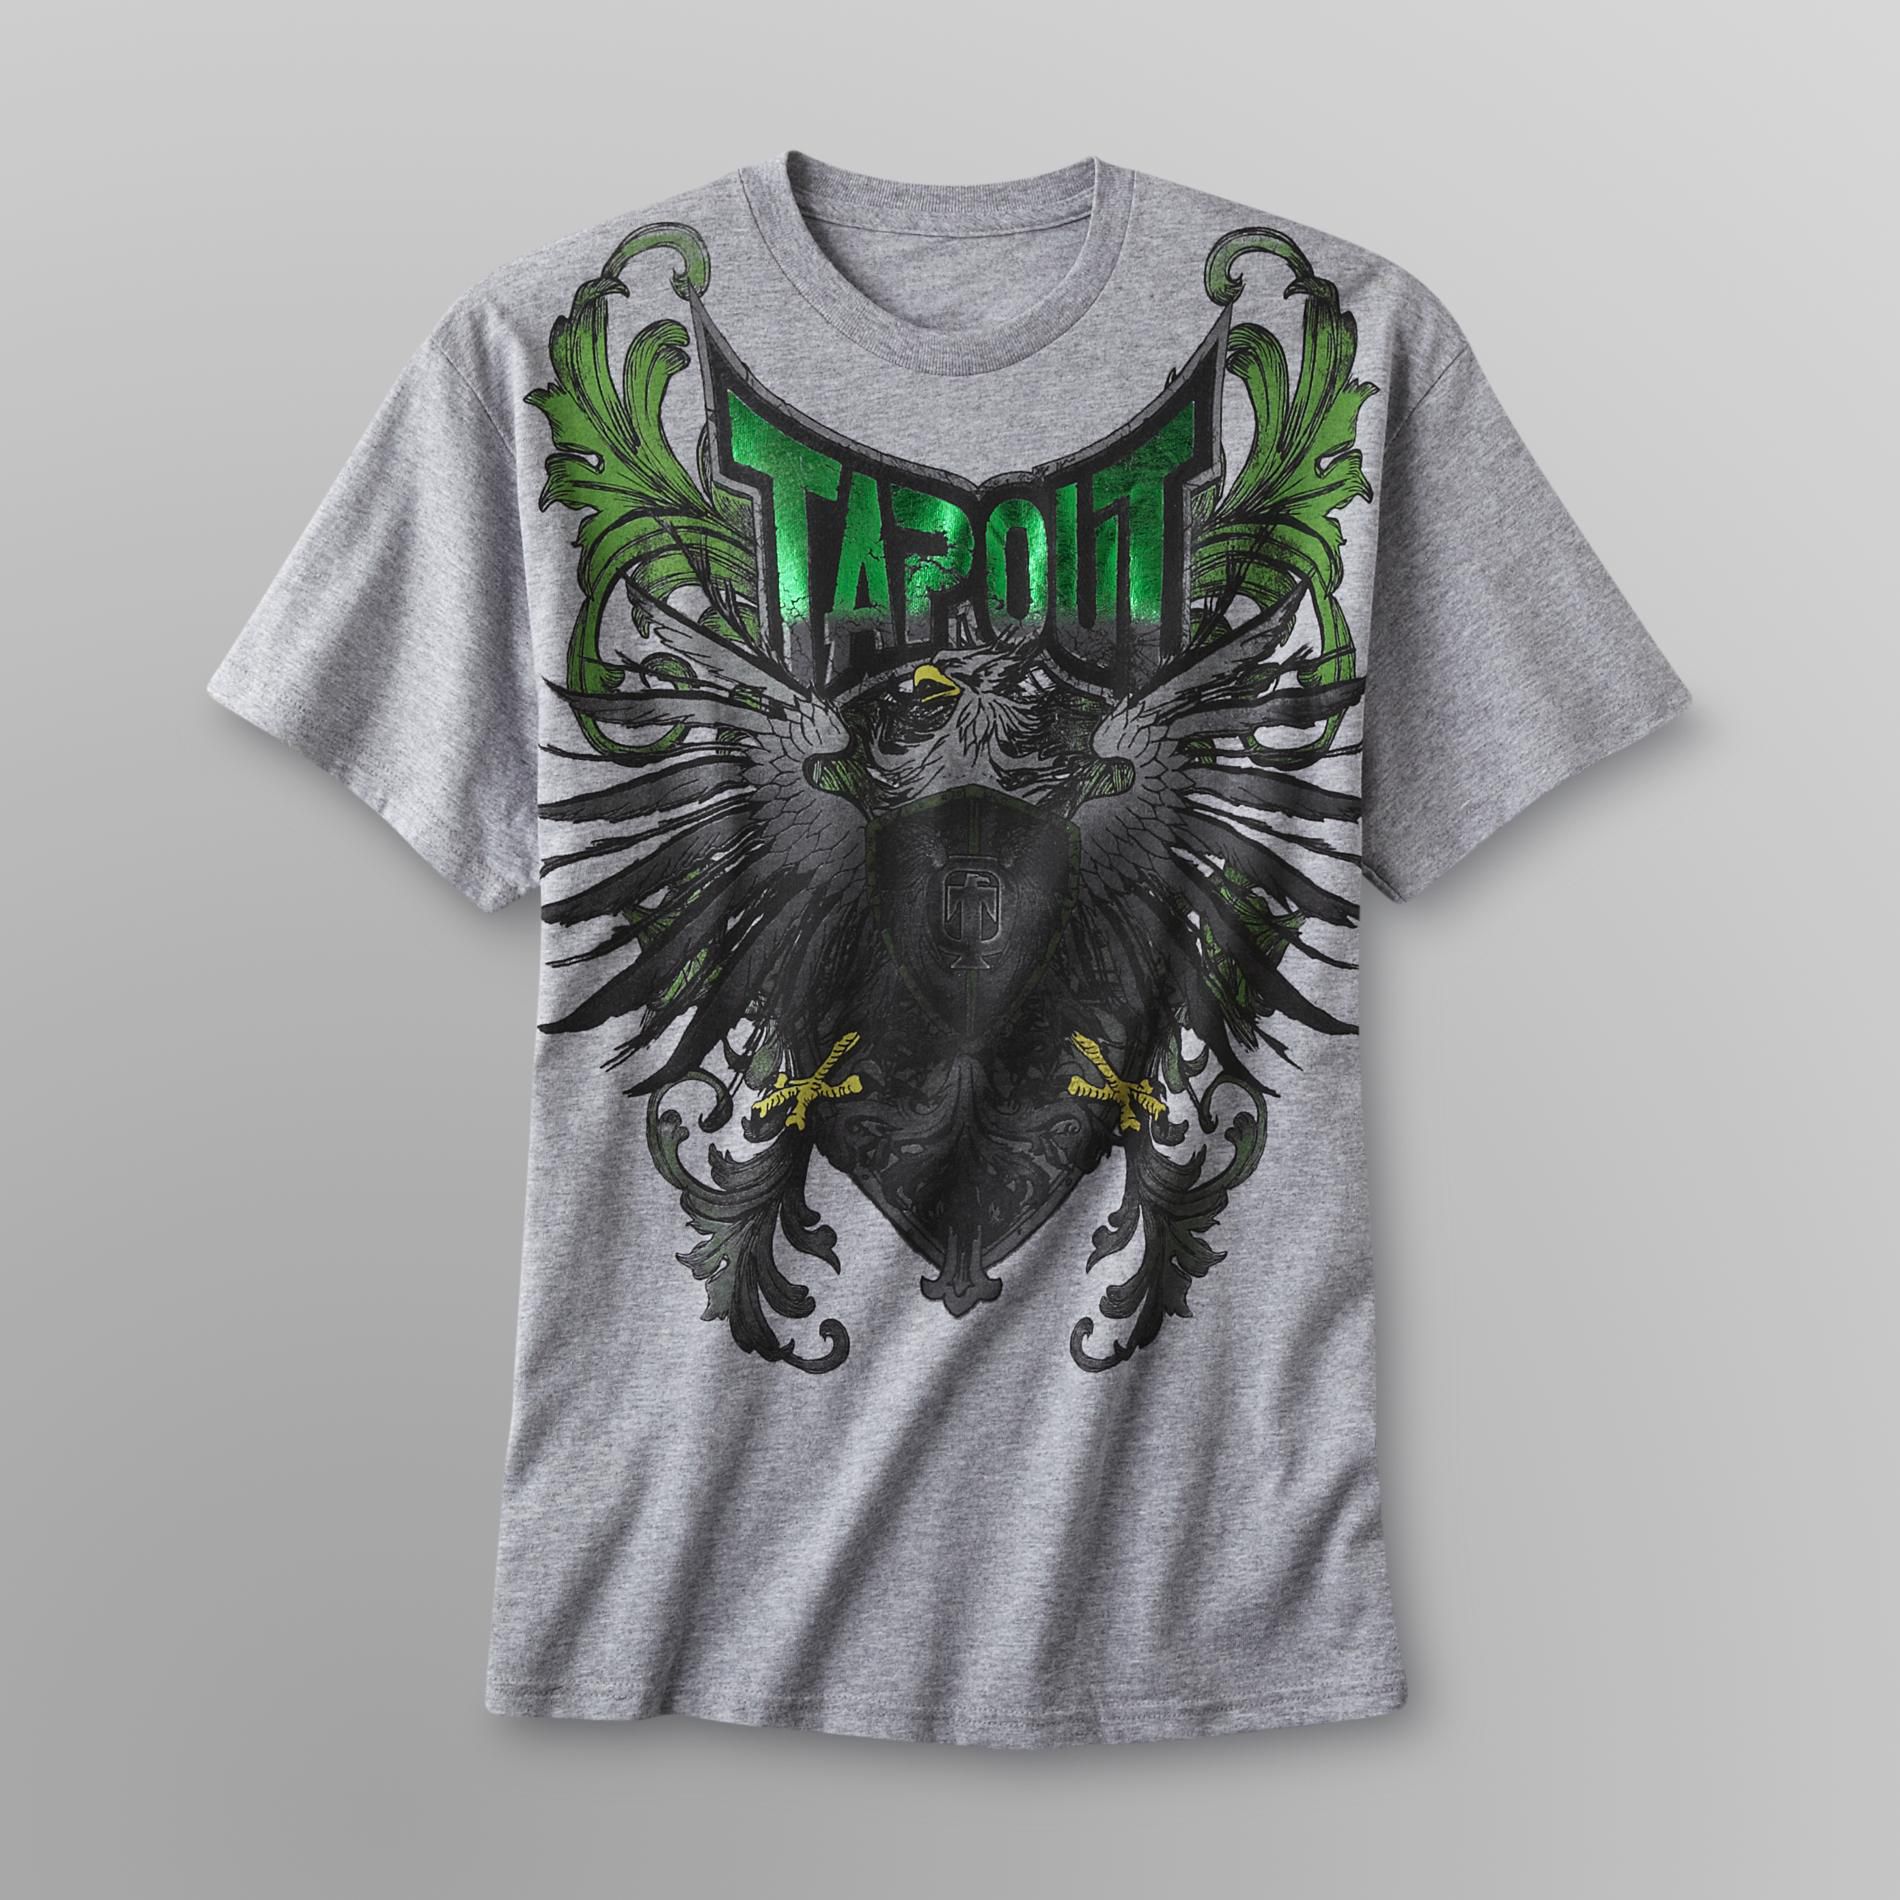 TapouT Young Men's Graphic T-Shirt - Regal Eagle